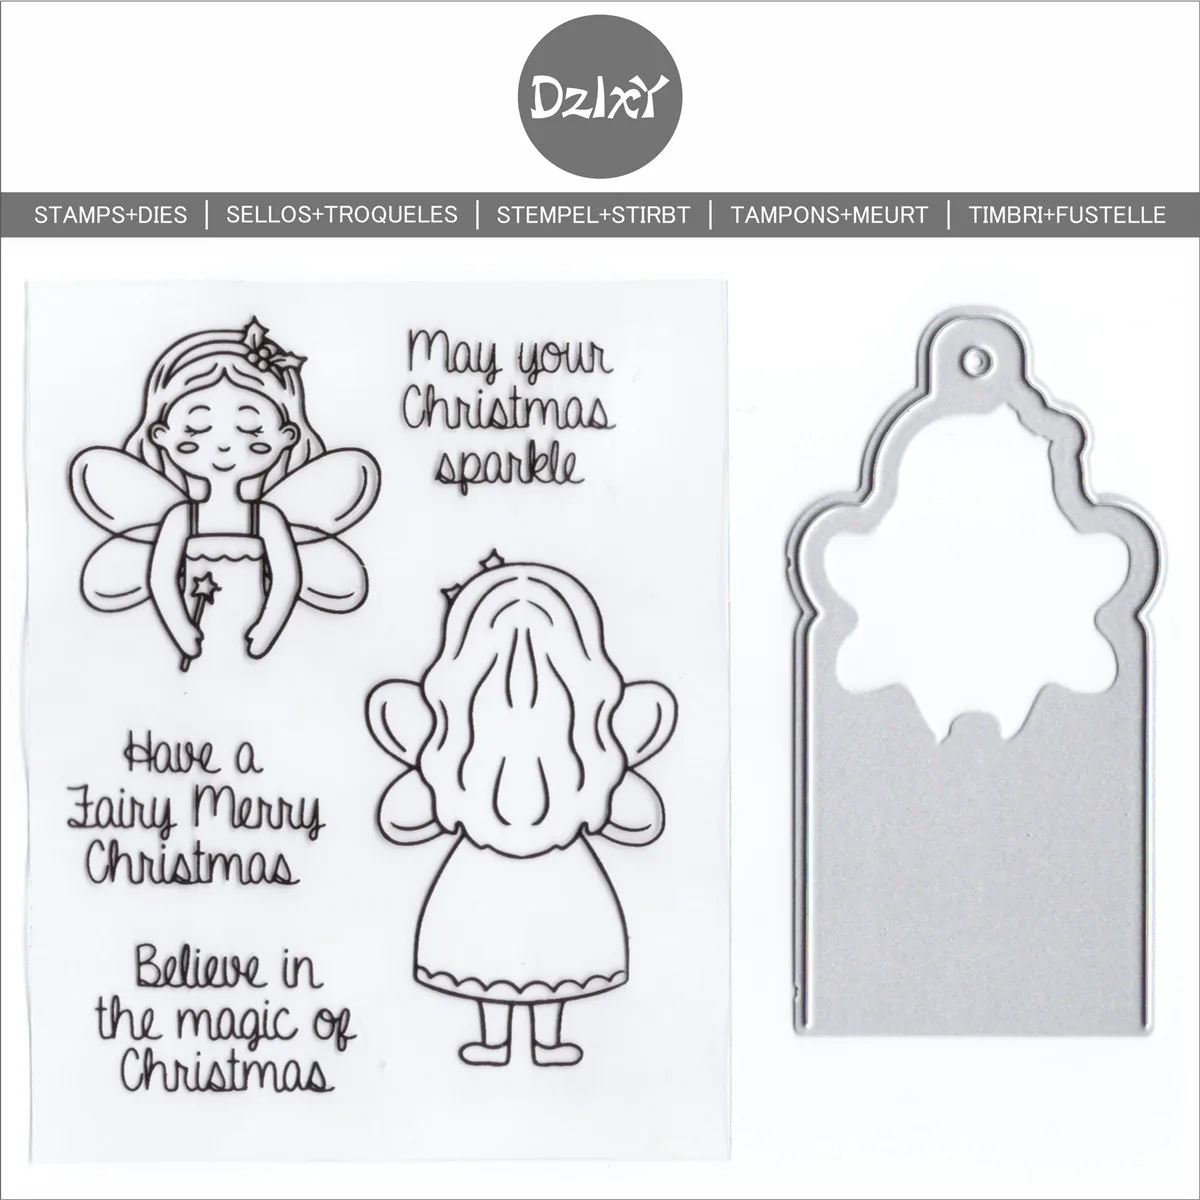 DzIxY Elf Girl Прозрачные штампы и металлические штампы для изготовления открыток Набор прозрачных печатей Трафареты для тиснения бумаги Поделки . ' - ' . 0